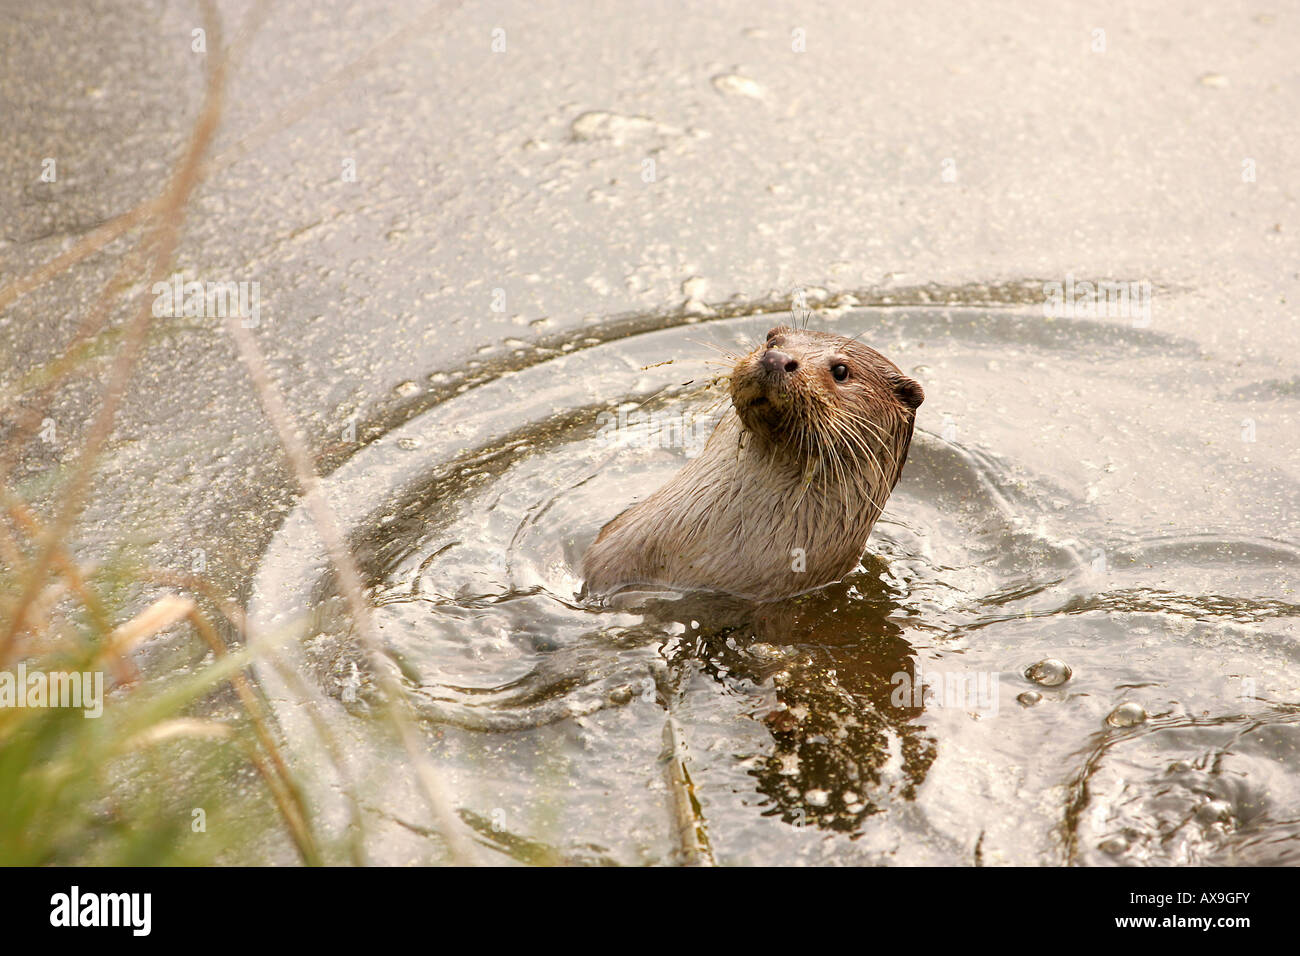 A European otter Stock Photo